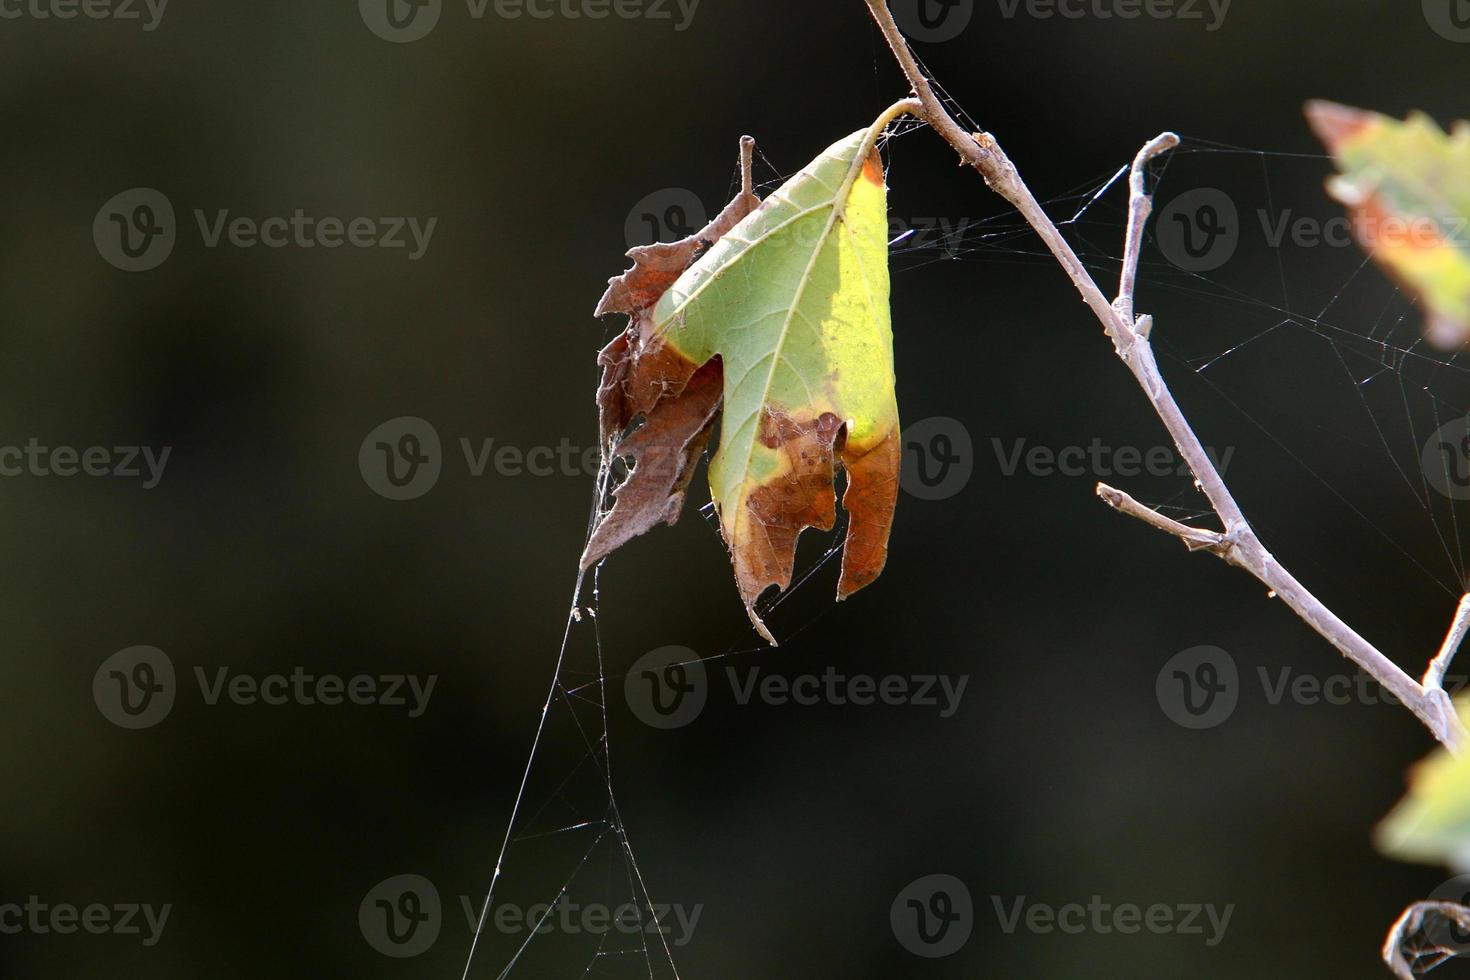 nos galhos e folhas das árvores teias de aranha de fios finos. foto